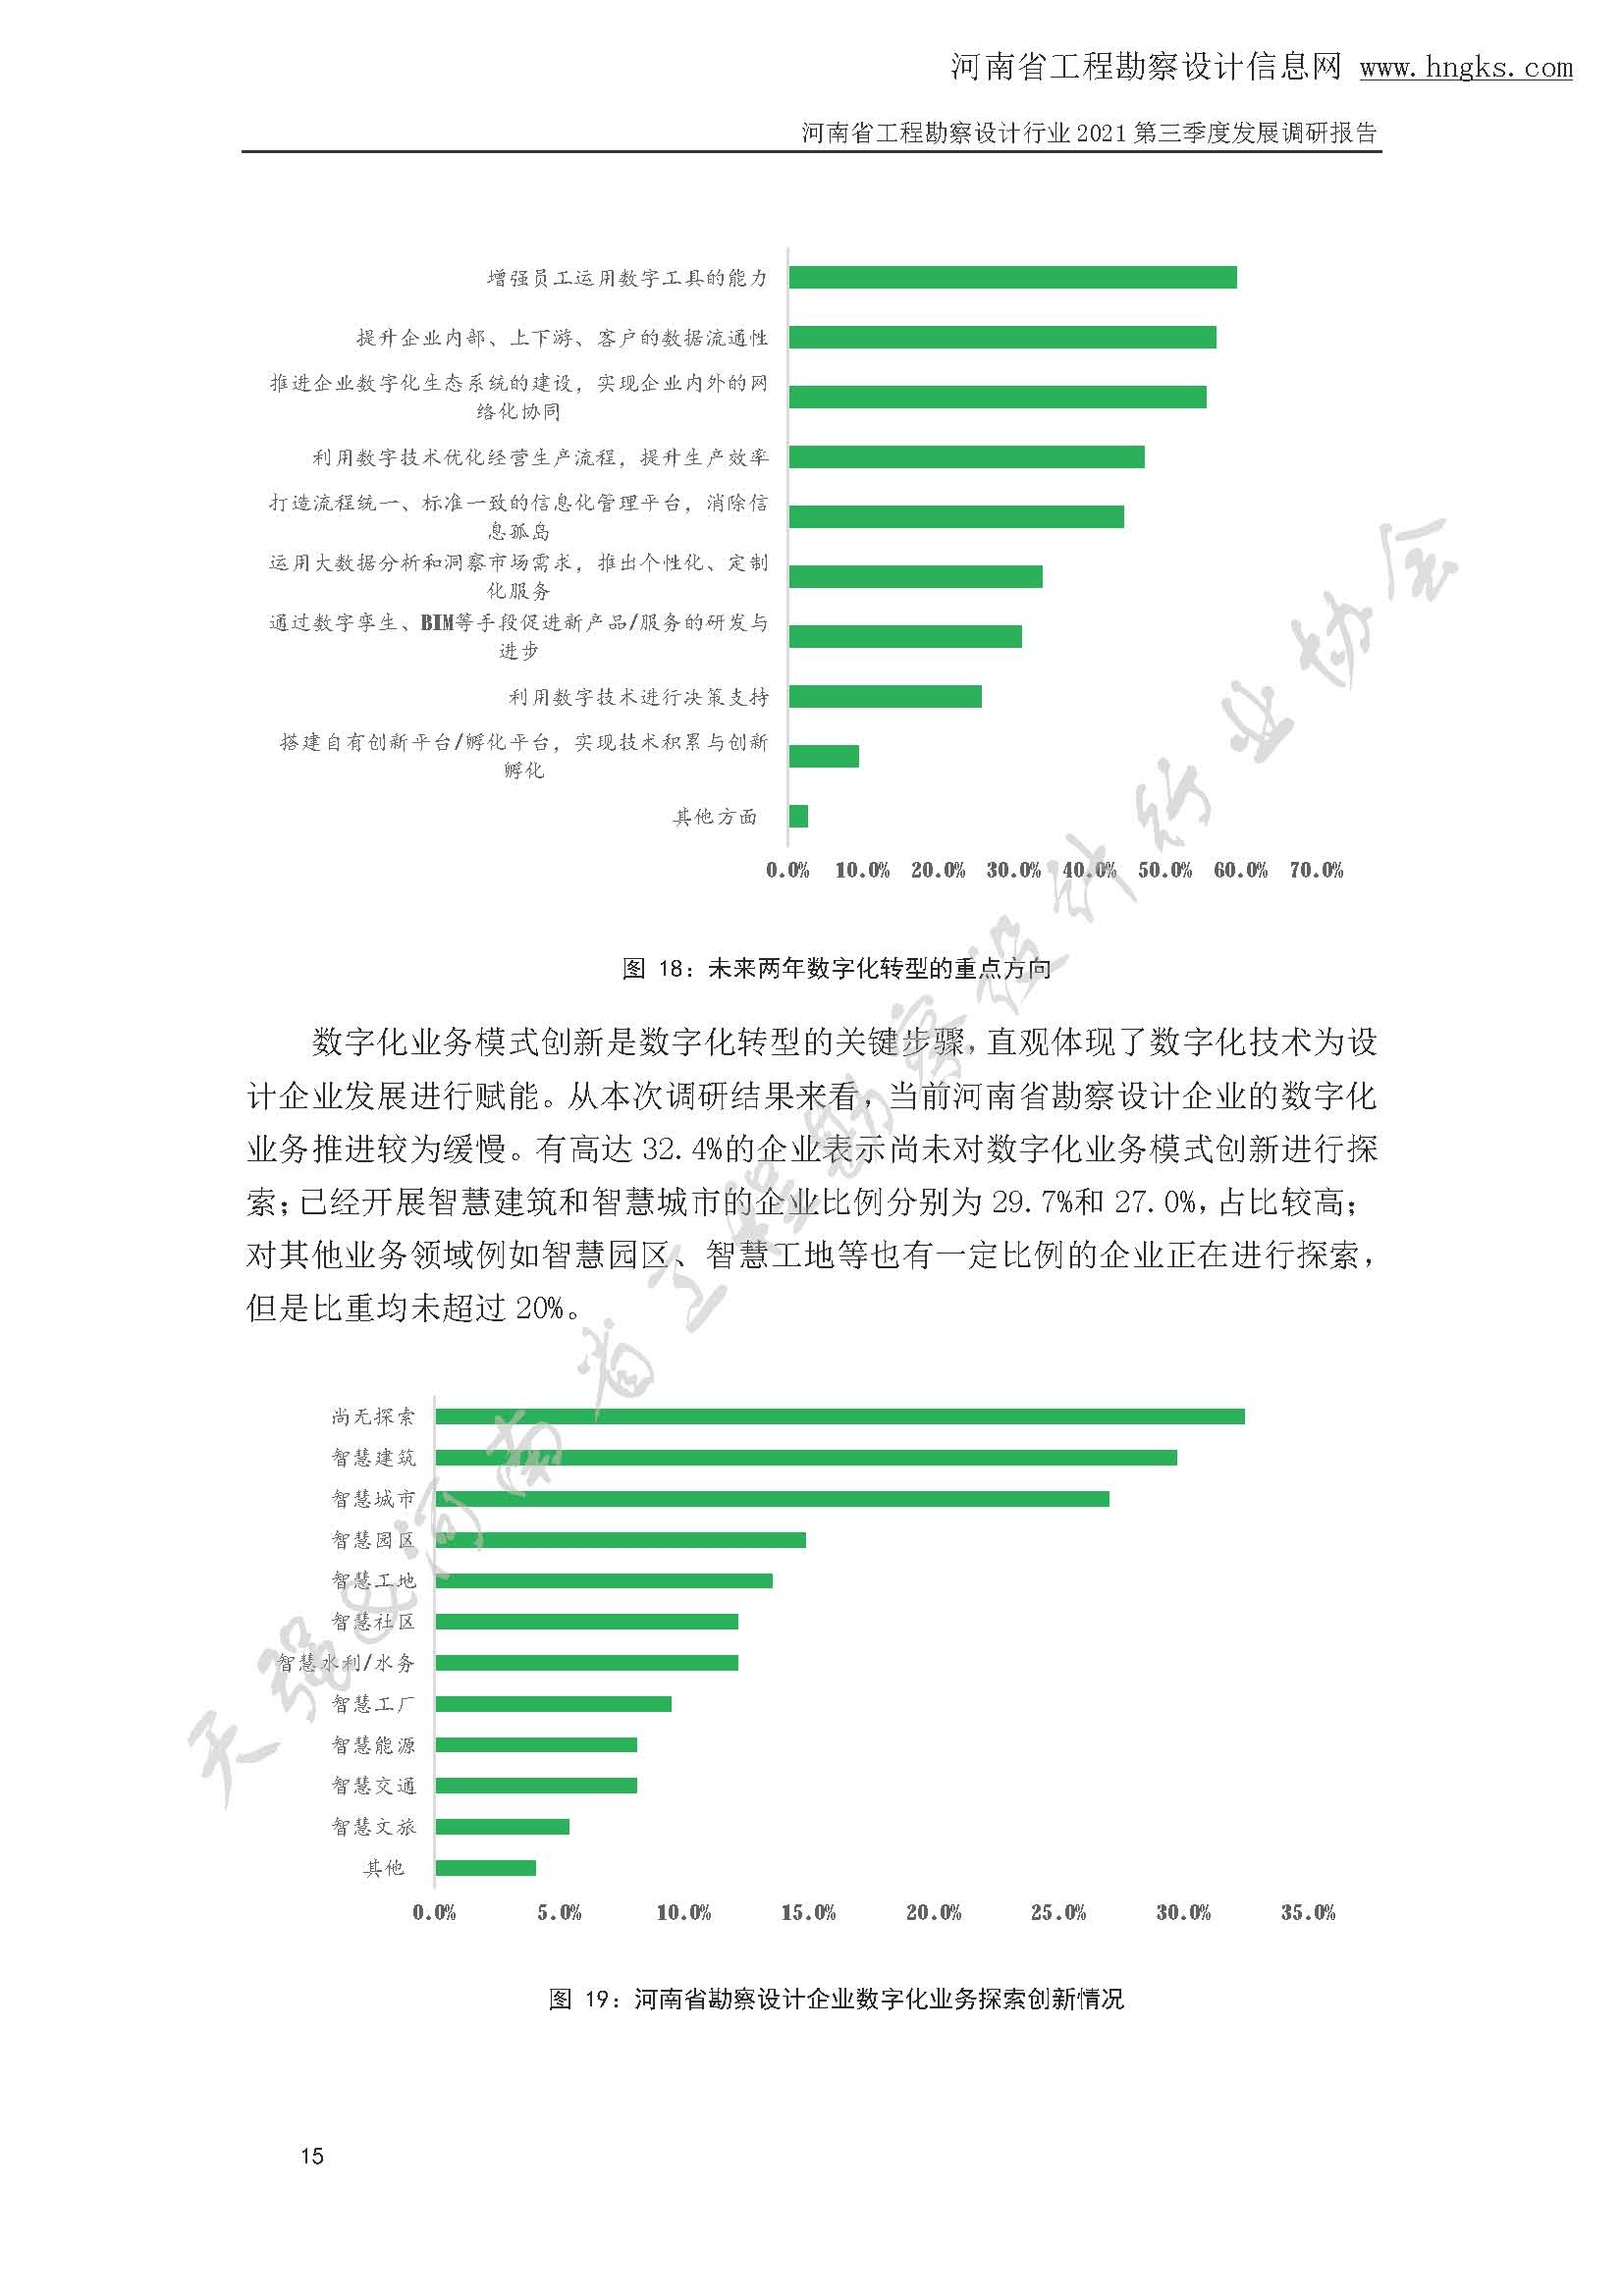 河南省工程勘察设计企业2021年第三季度发展调研报告-公开版_页面_18.jpg